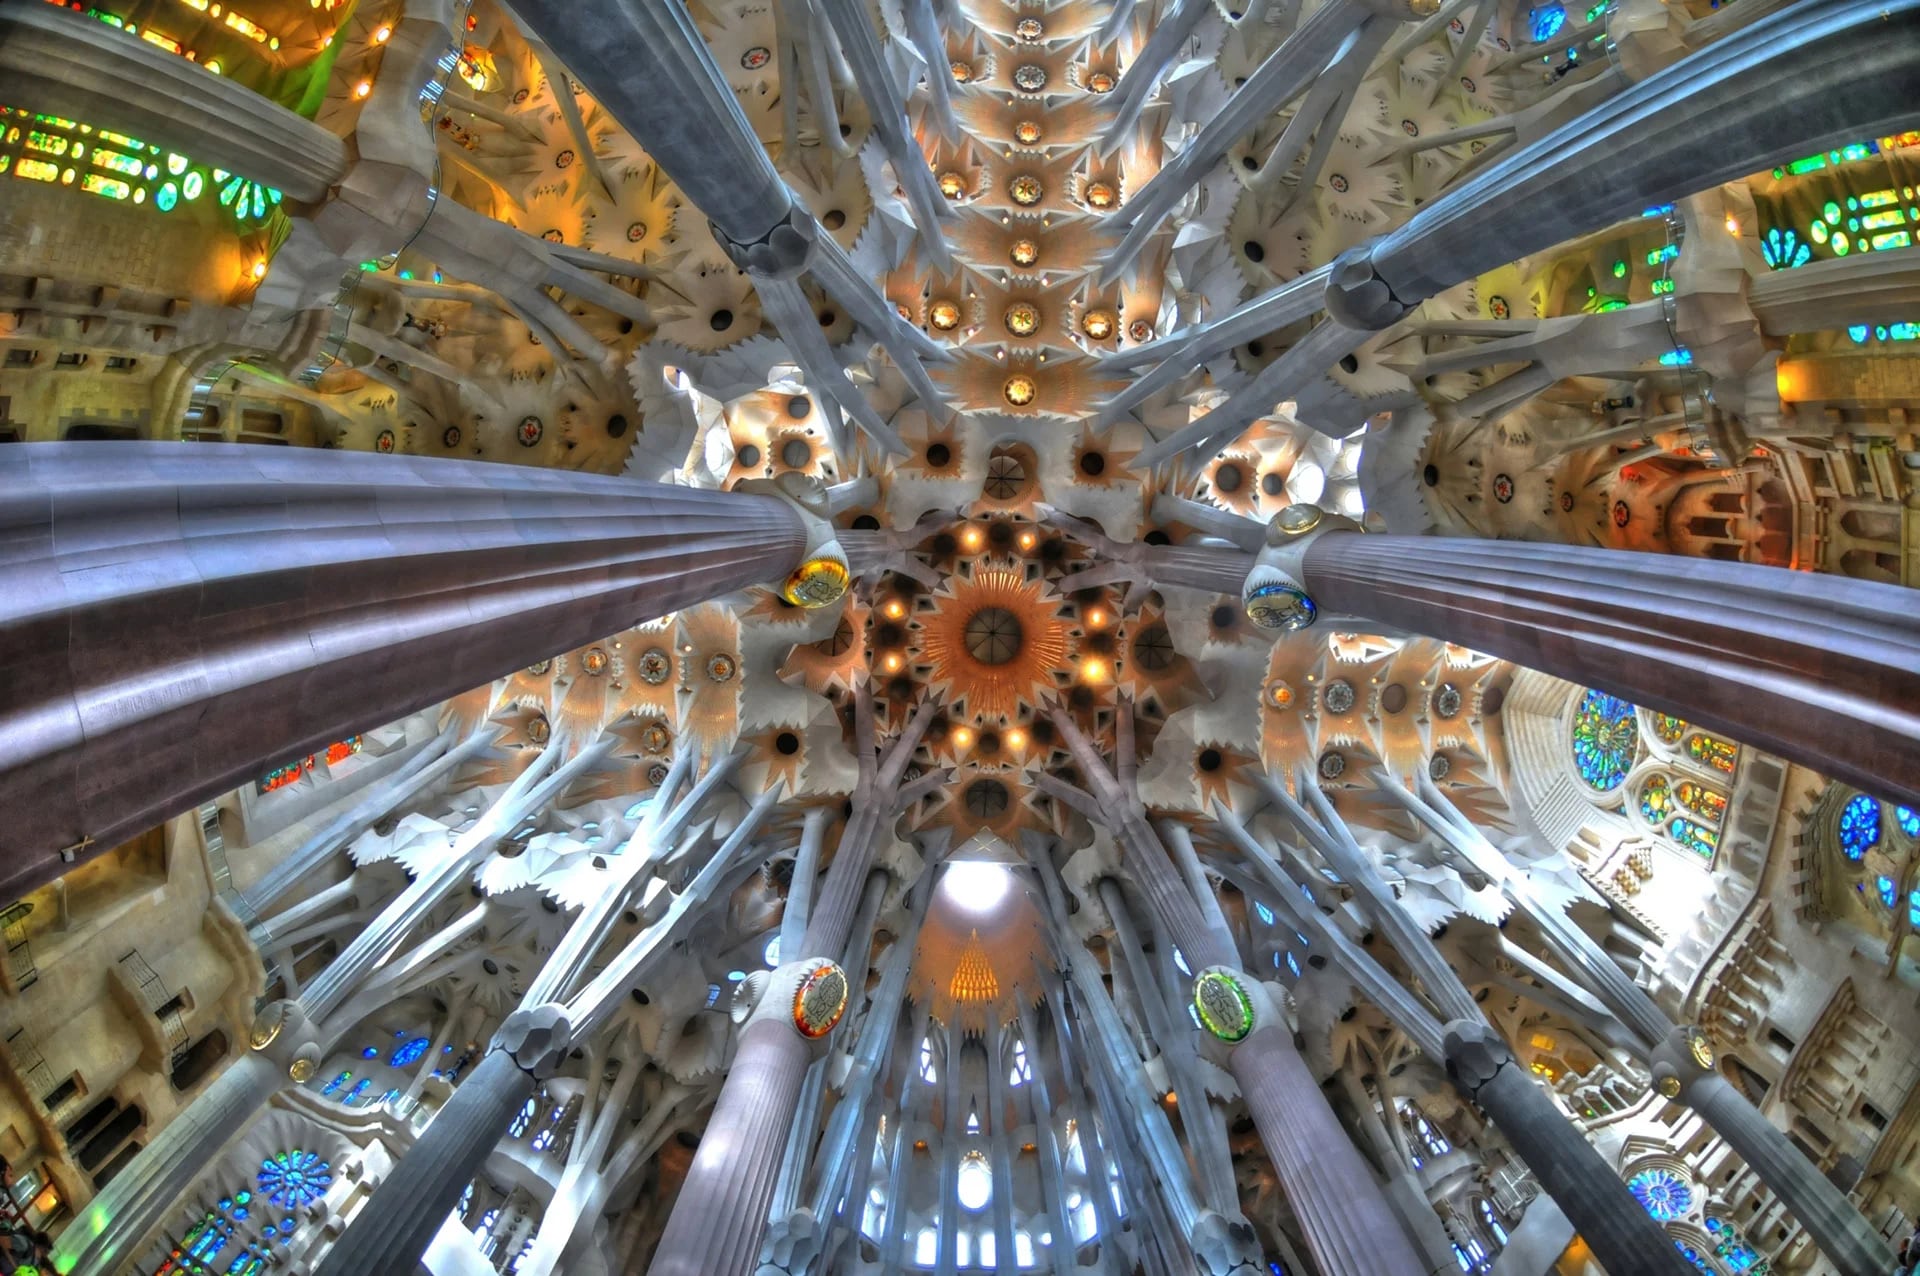 Para liberar de peso a los techos y aportar luz, Gaudí ubicó, en los espacios situados entre las columnas, unos tragaluces de vidrio doradas y verdes y con baldosas, por donde entra y se refleja la luz solar